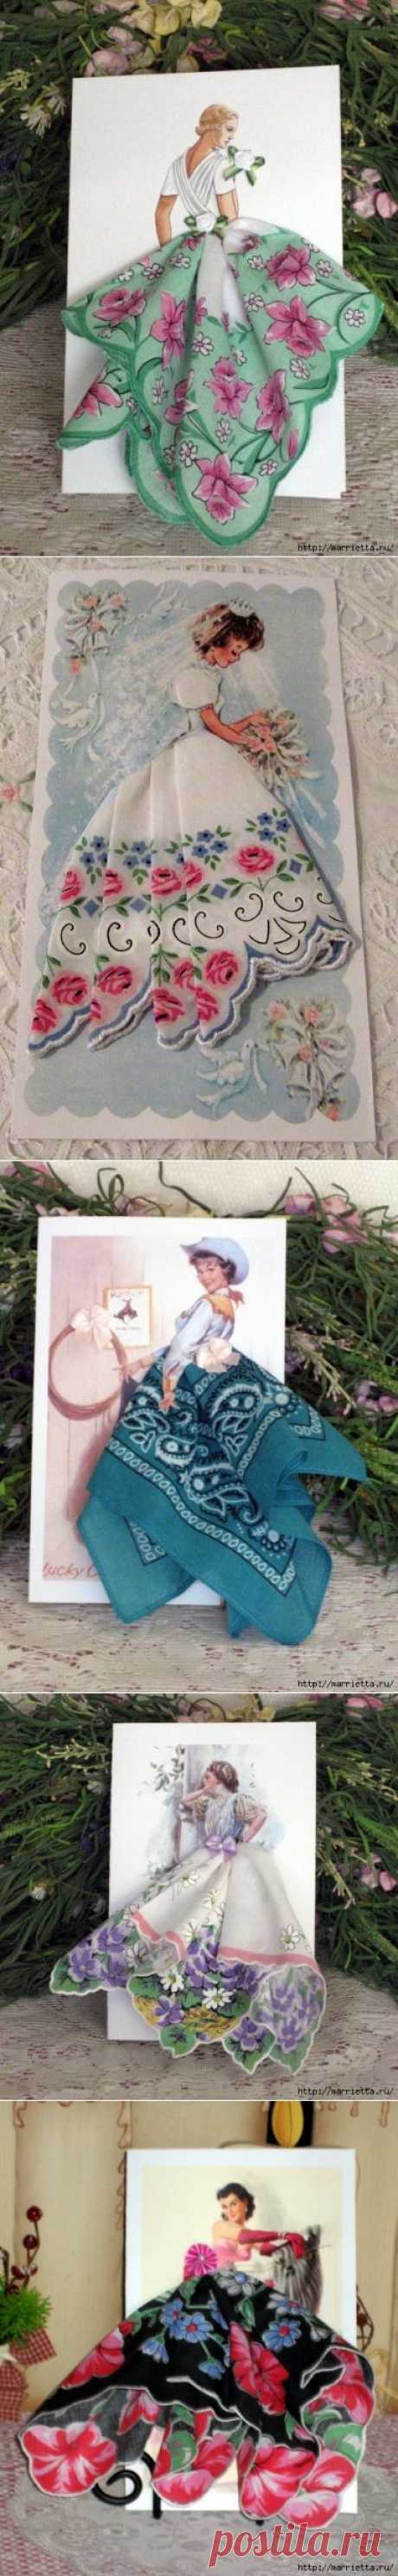 Винтажные открытки с дамами в юбках из носовых платков